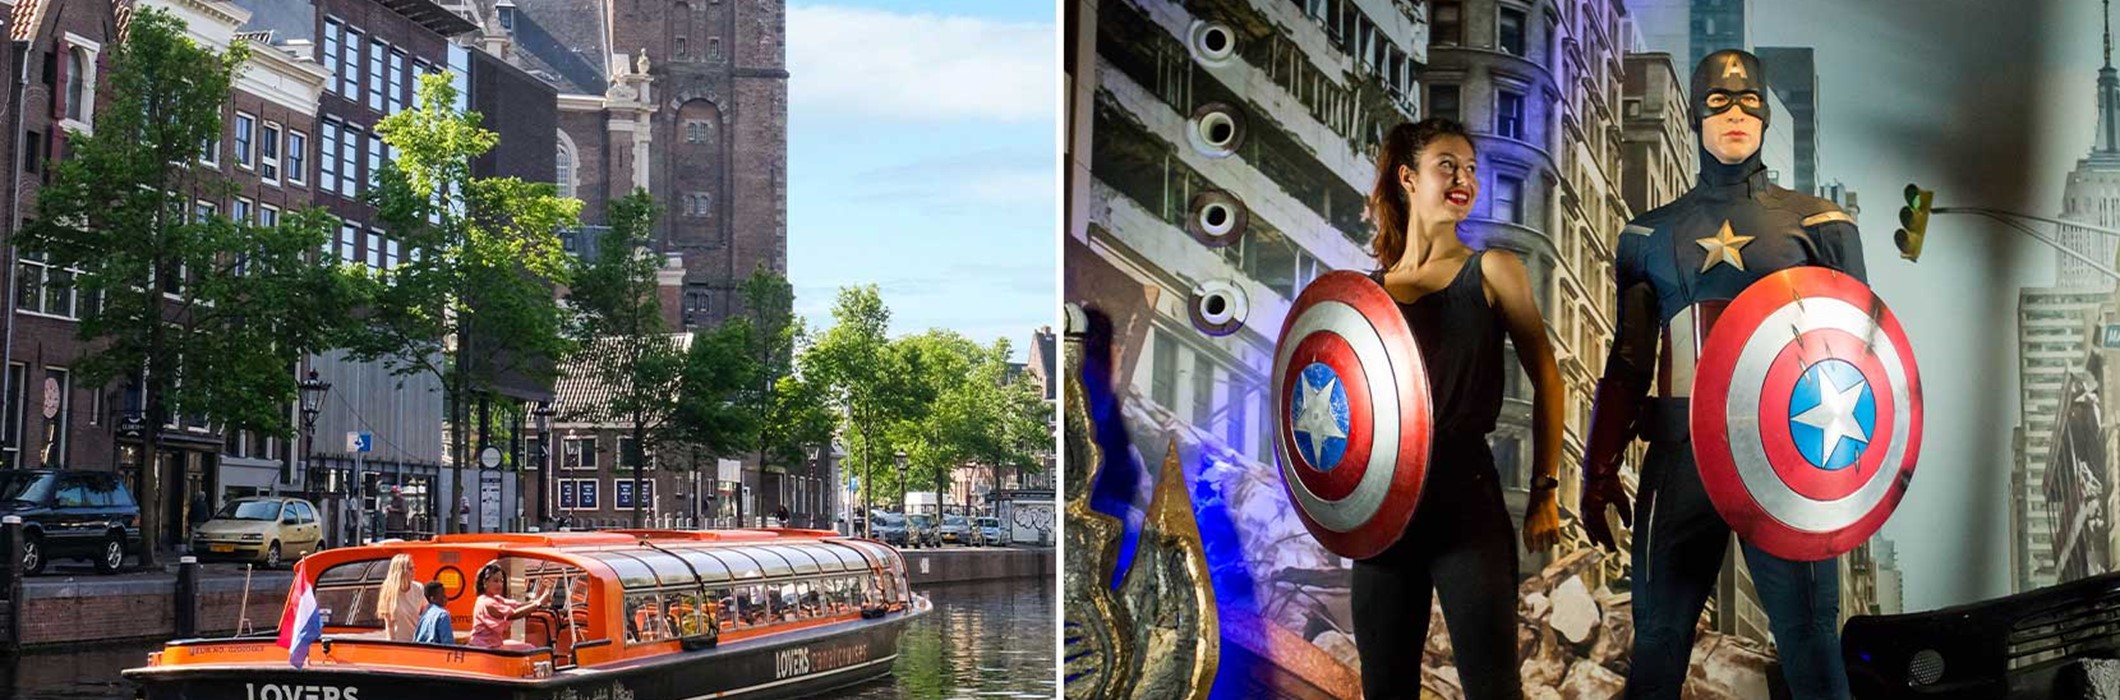 Madame Tussauds + Grachtenrundfahrt durch Amsterdam